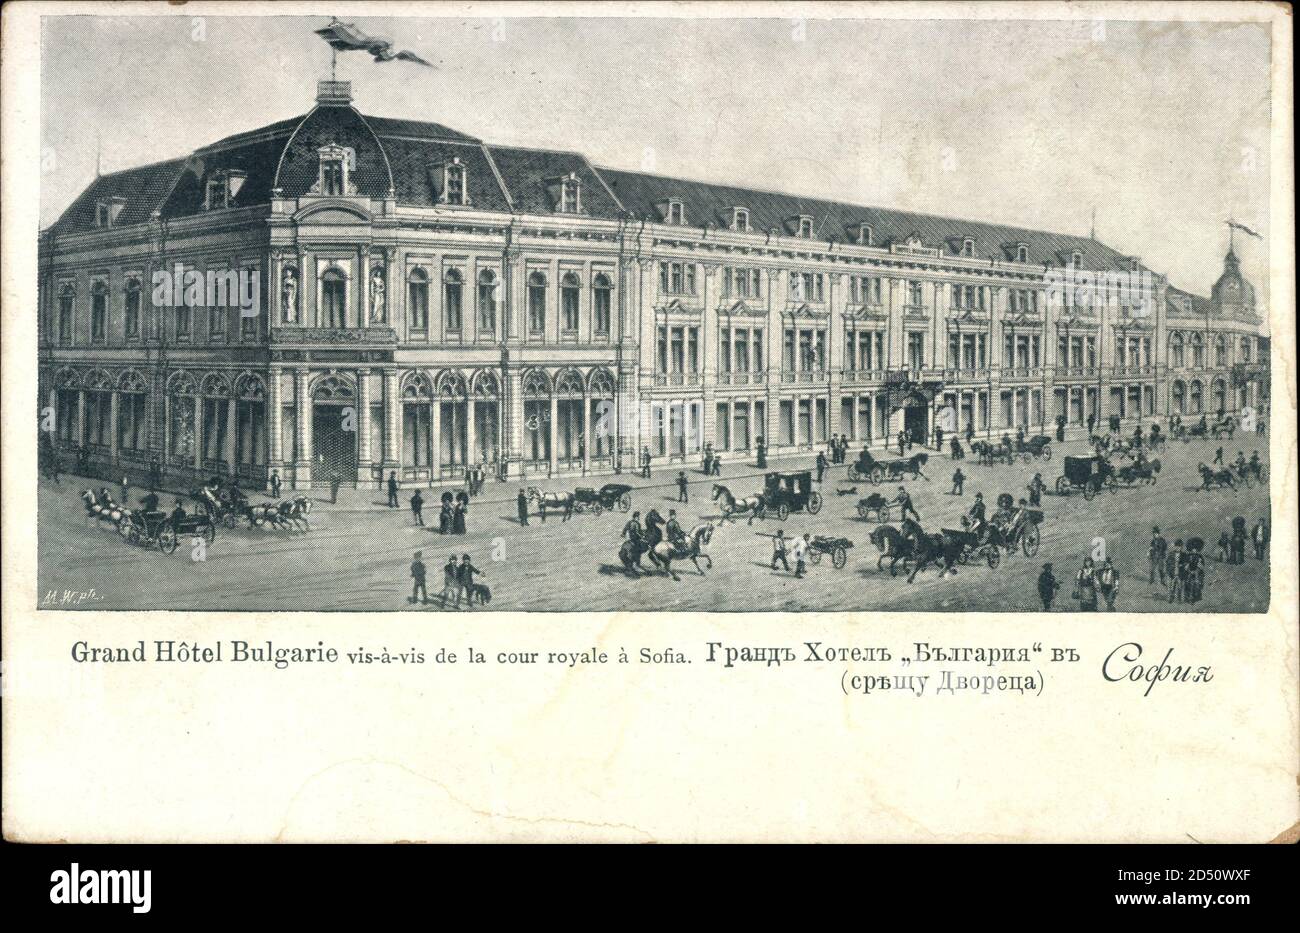 Sofia Bulgarien, Grand Hotel Bulgarie, Vis à Vis de la Cour Royale | usage worldwide Stock Photo